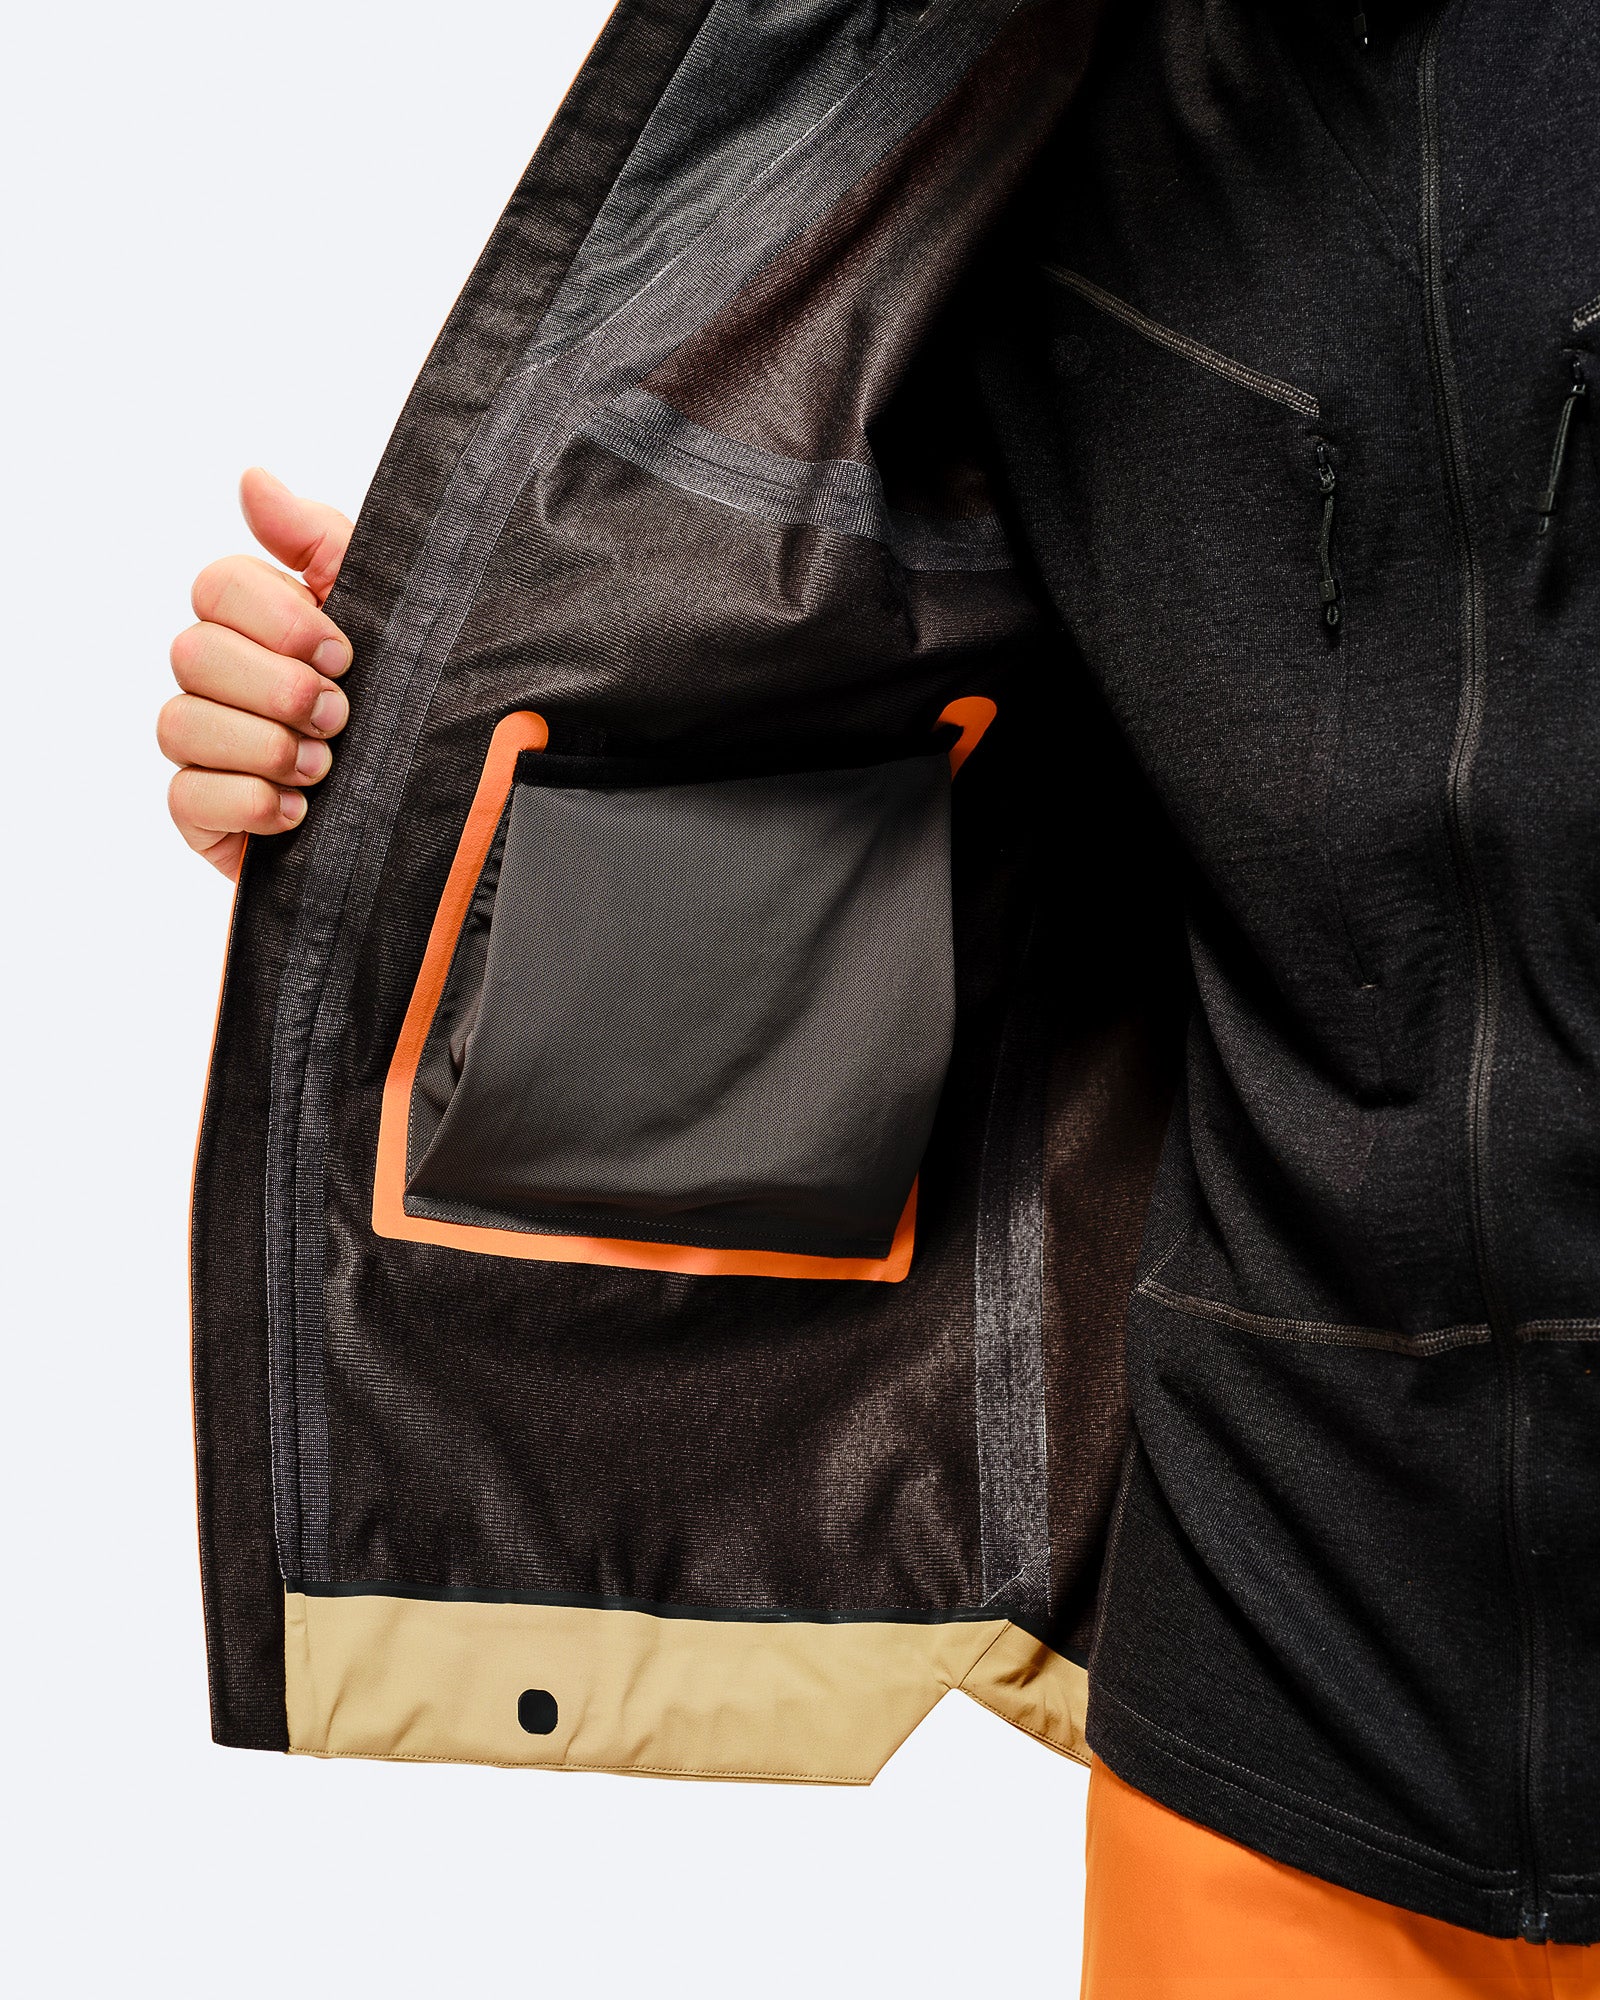 3L GORE-TEX Material mit weicher Rückseite für mehr Wärme,
2 Fronttaschen, Unterarmbelüftung
Kinnschutz. card image